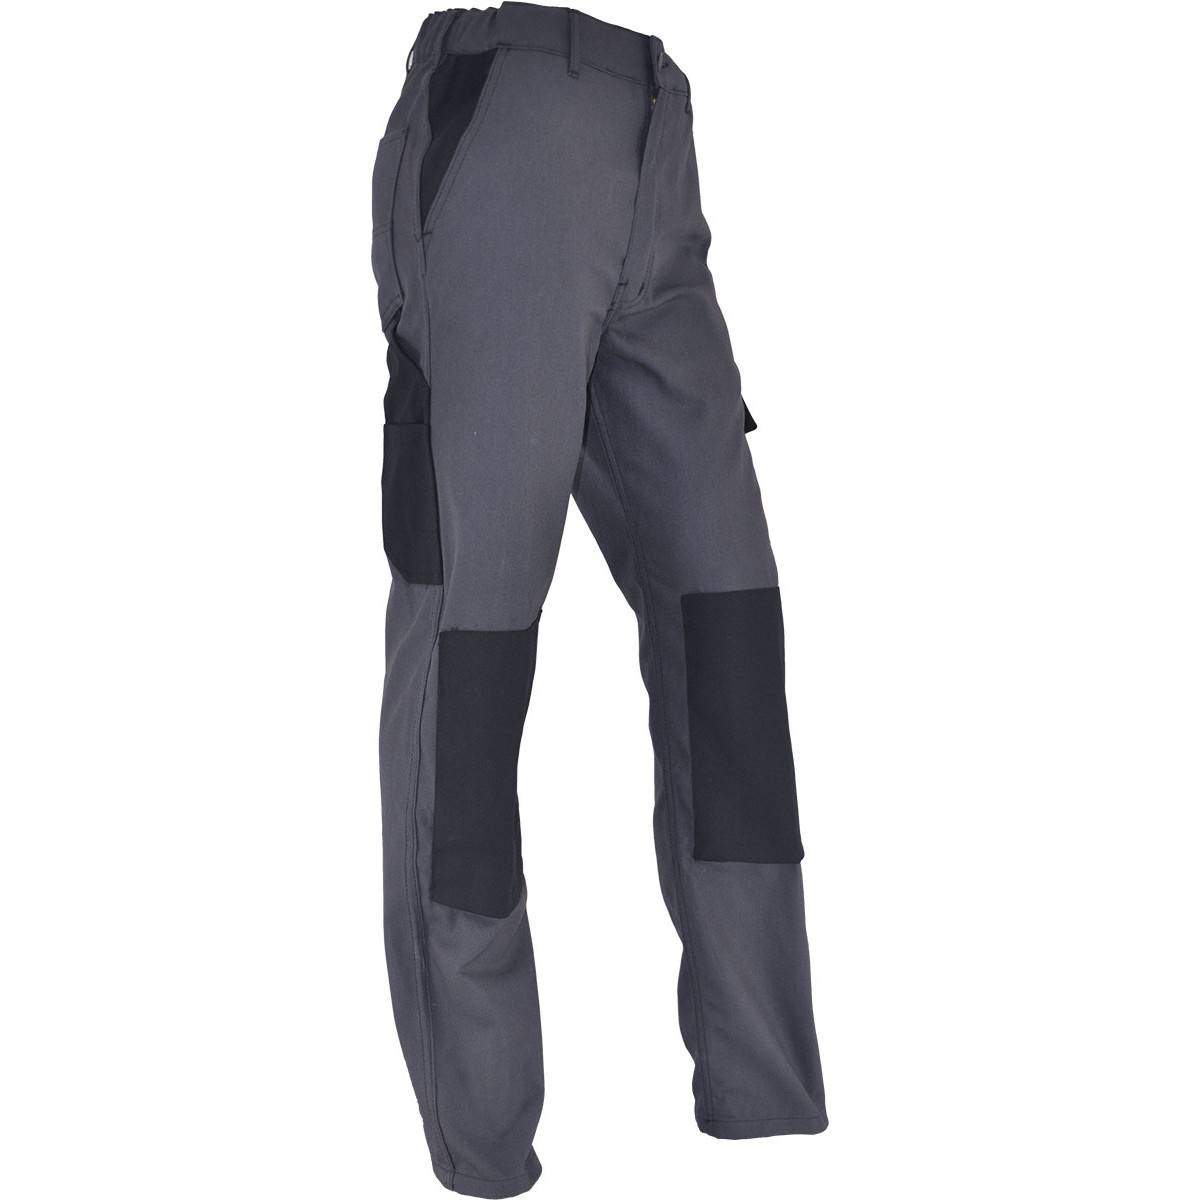 Pantalones de trabajo cómodos PMPC talla 48, gris antracita